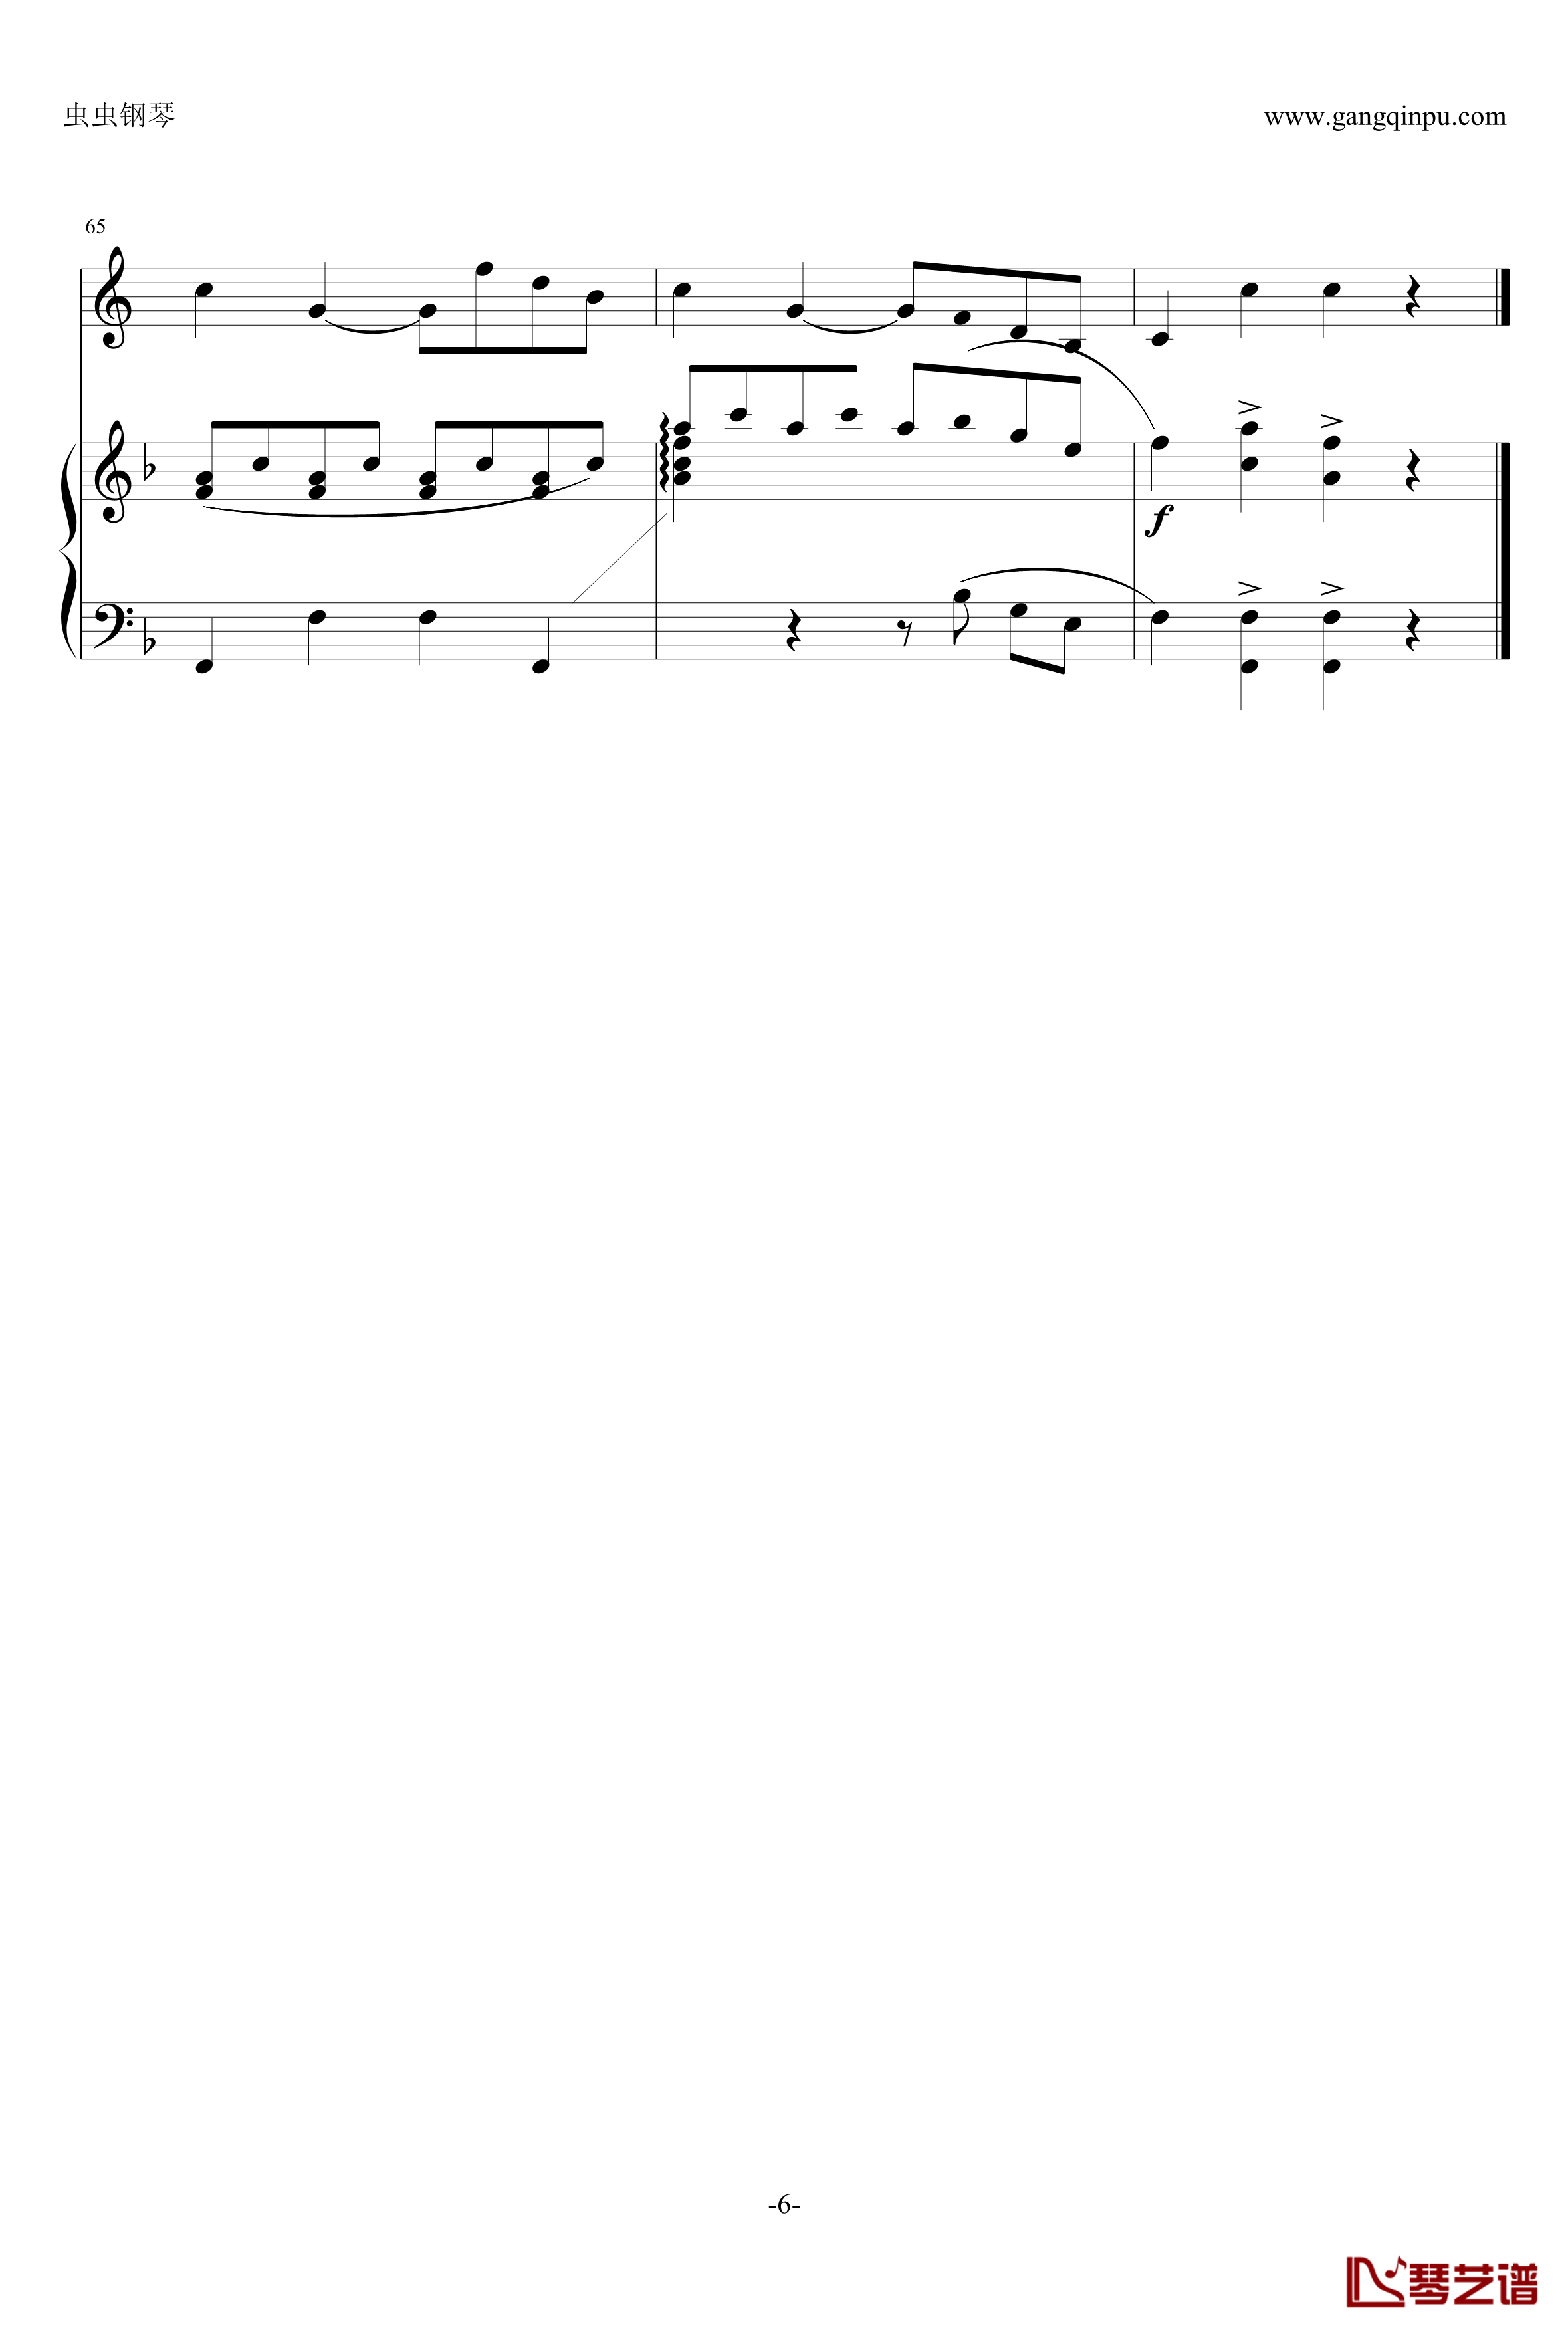 小奏鸣曲钢琴谱-莫扎特6